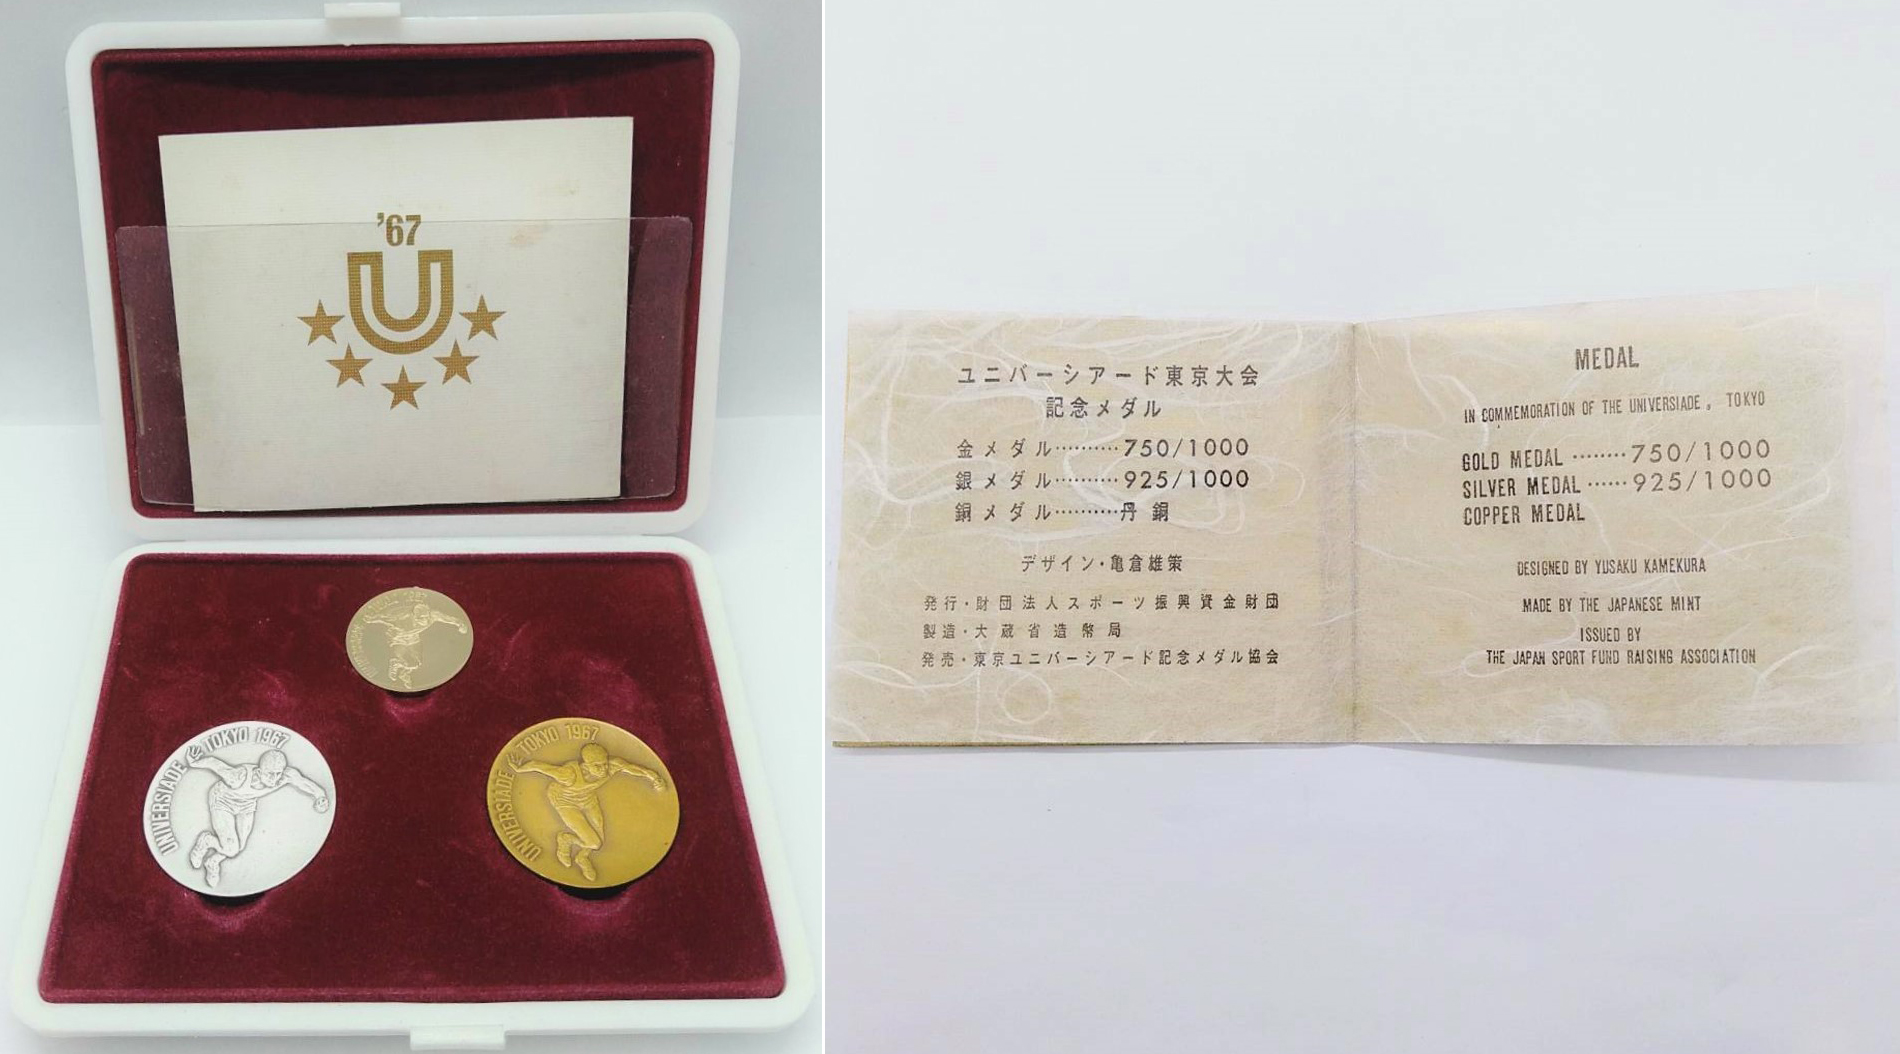 ユニバーシアード東京大会記念メダルの価値と買取相場 | 古銭の買取売却査定ナビ